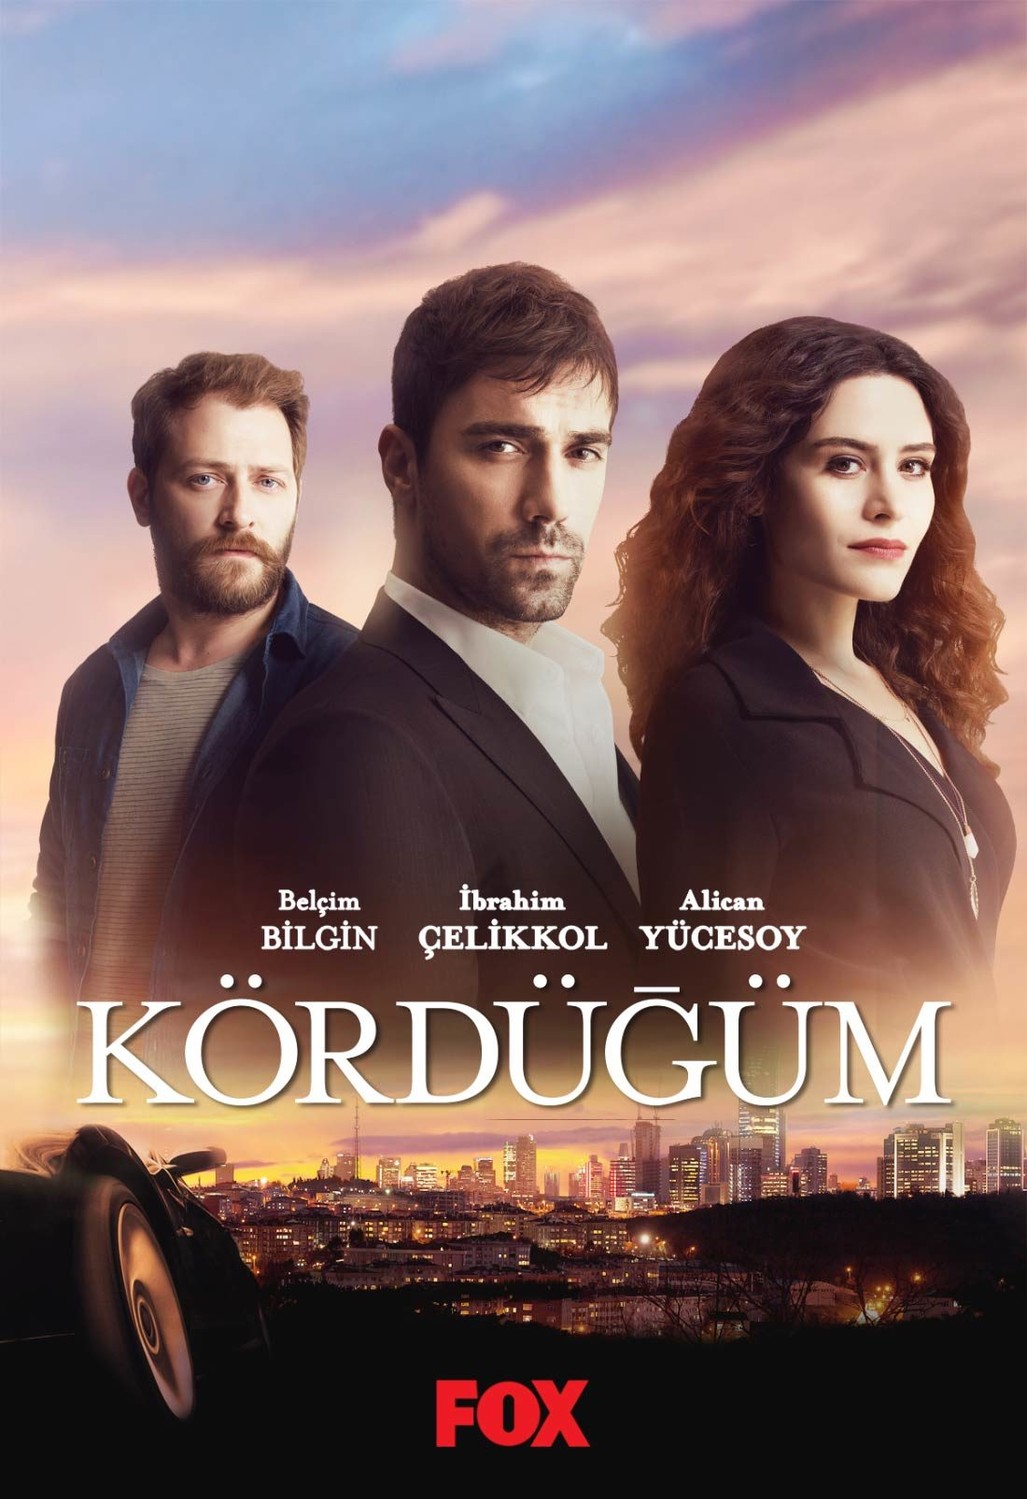 თურქული სერიალი ხაფანგი / Turquli Seriali Xafangi / Kordugum (2016)